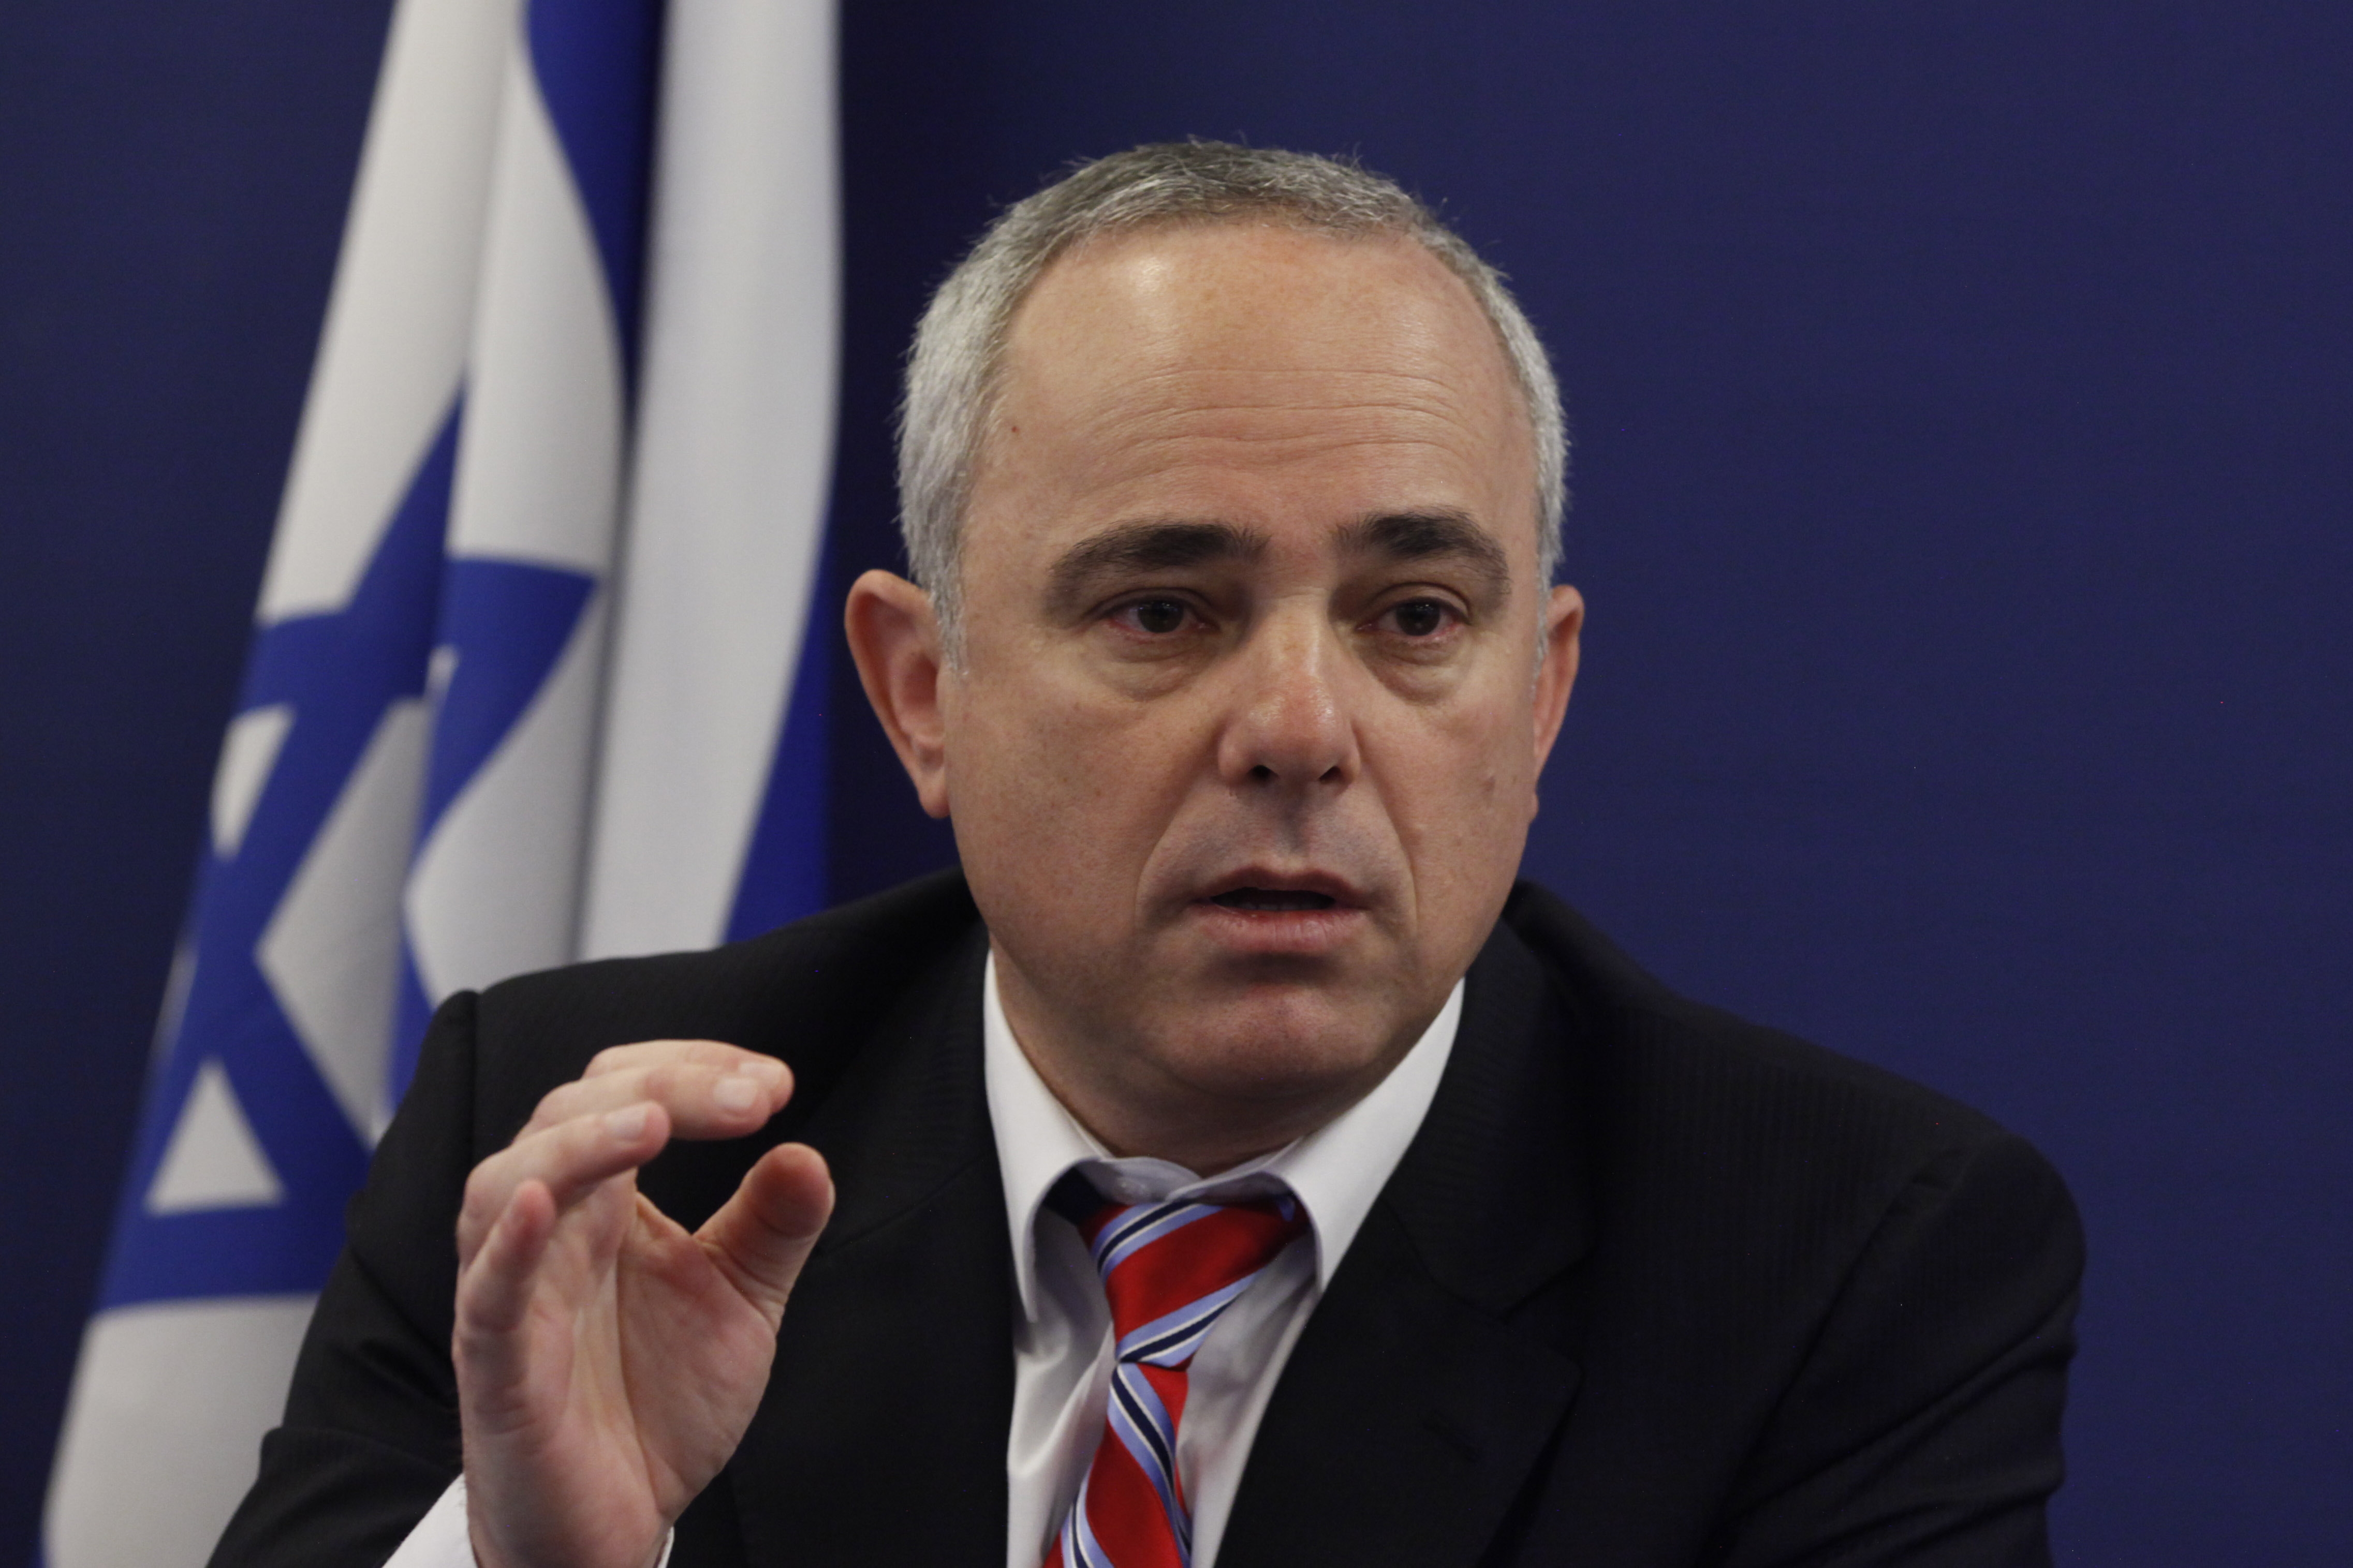 Israeli energy minister Youval Steinitz